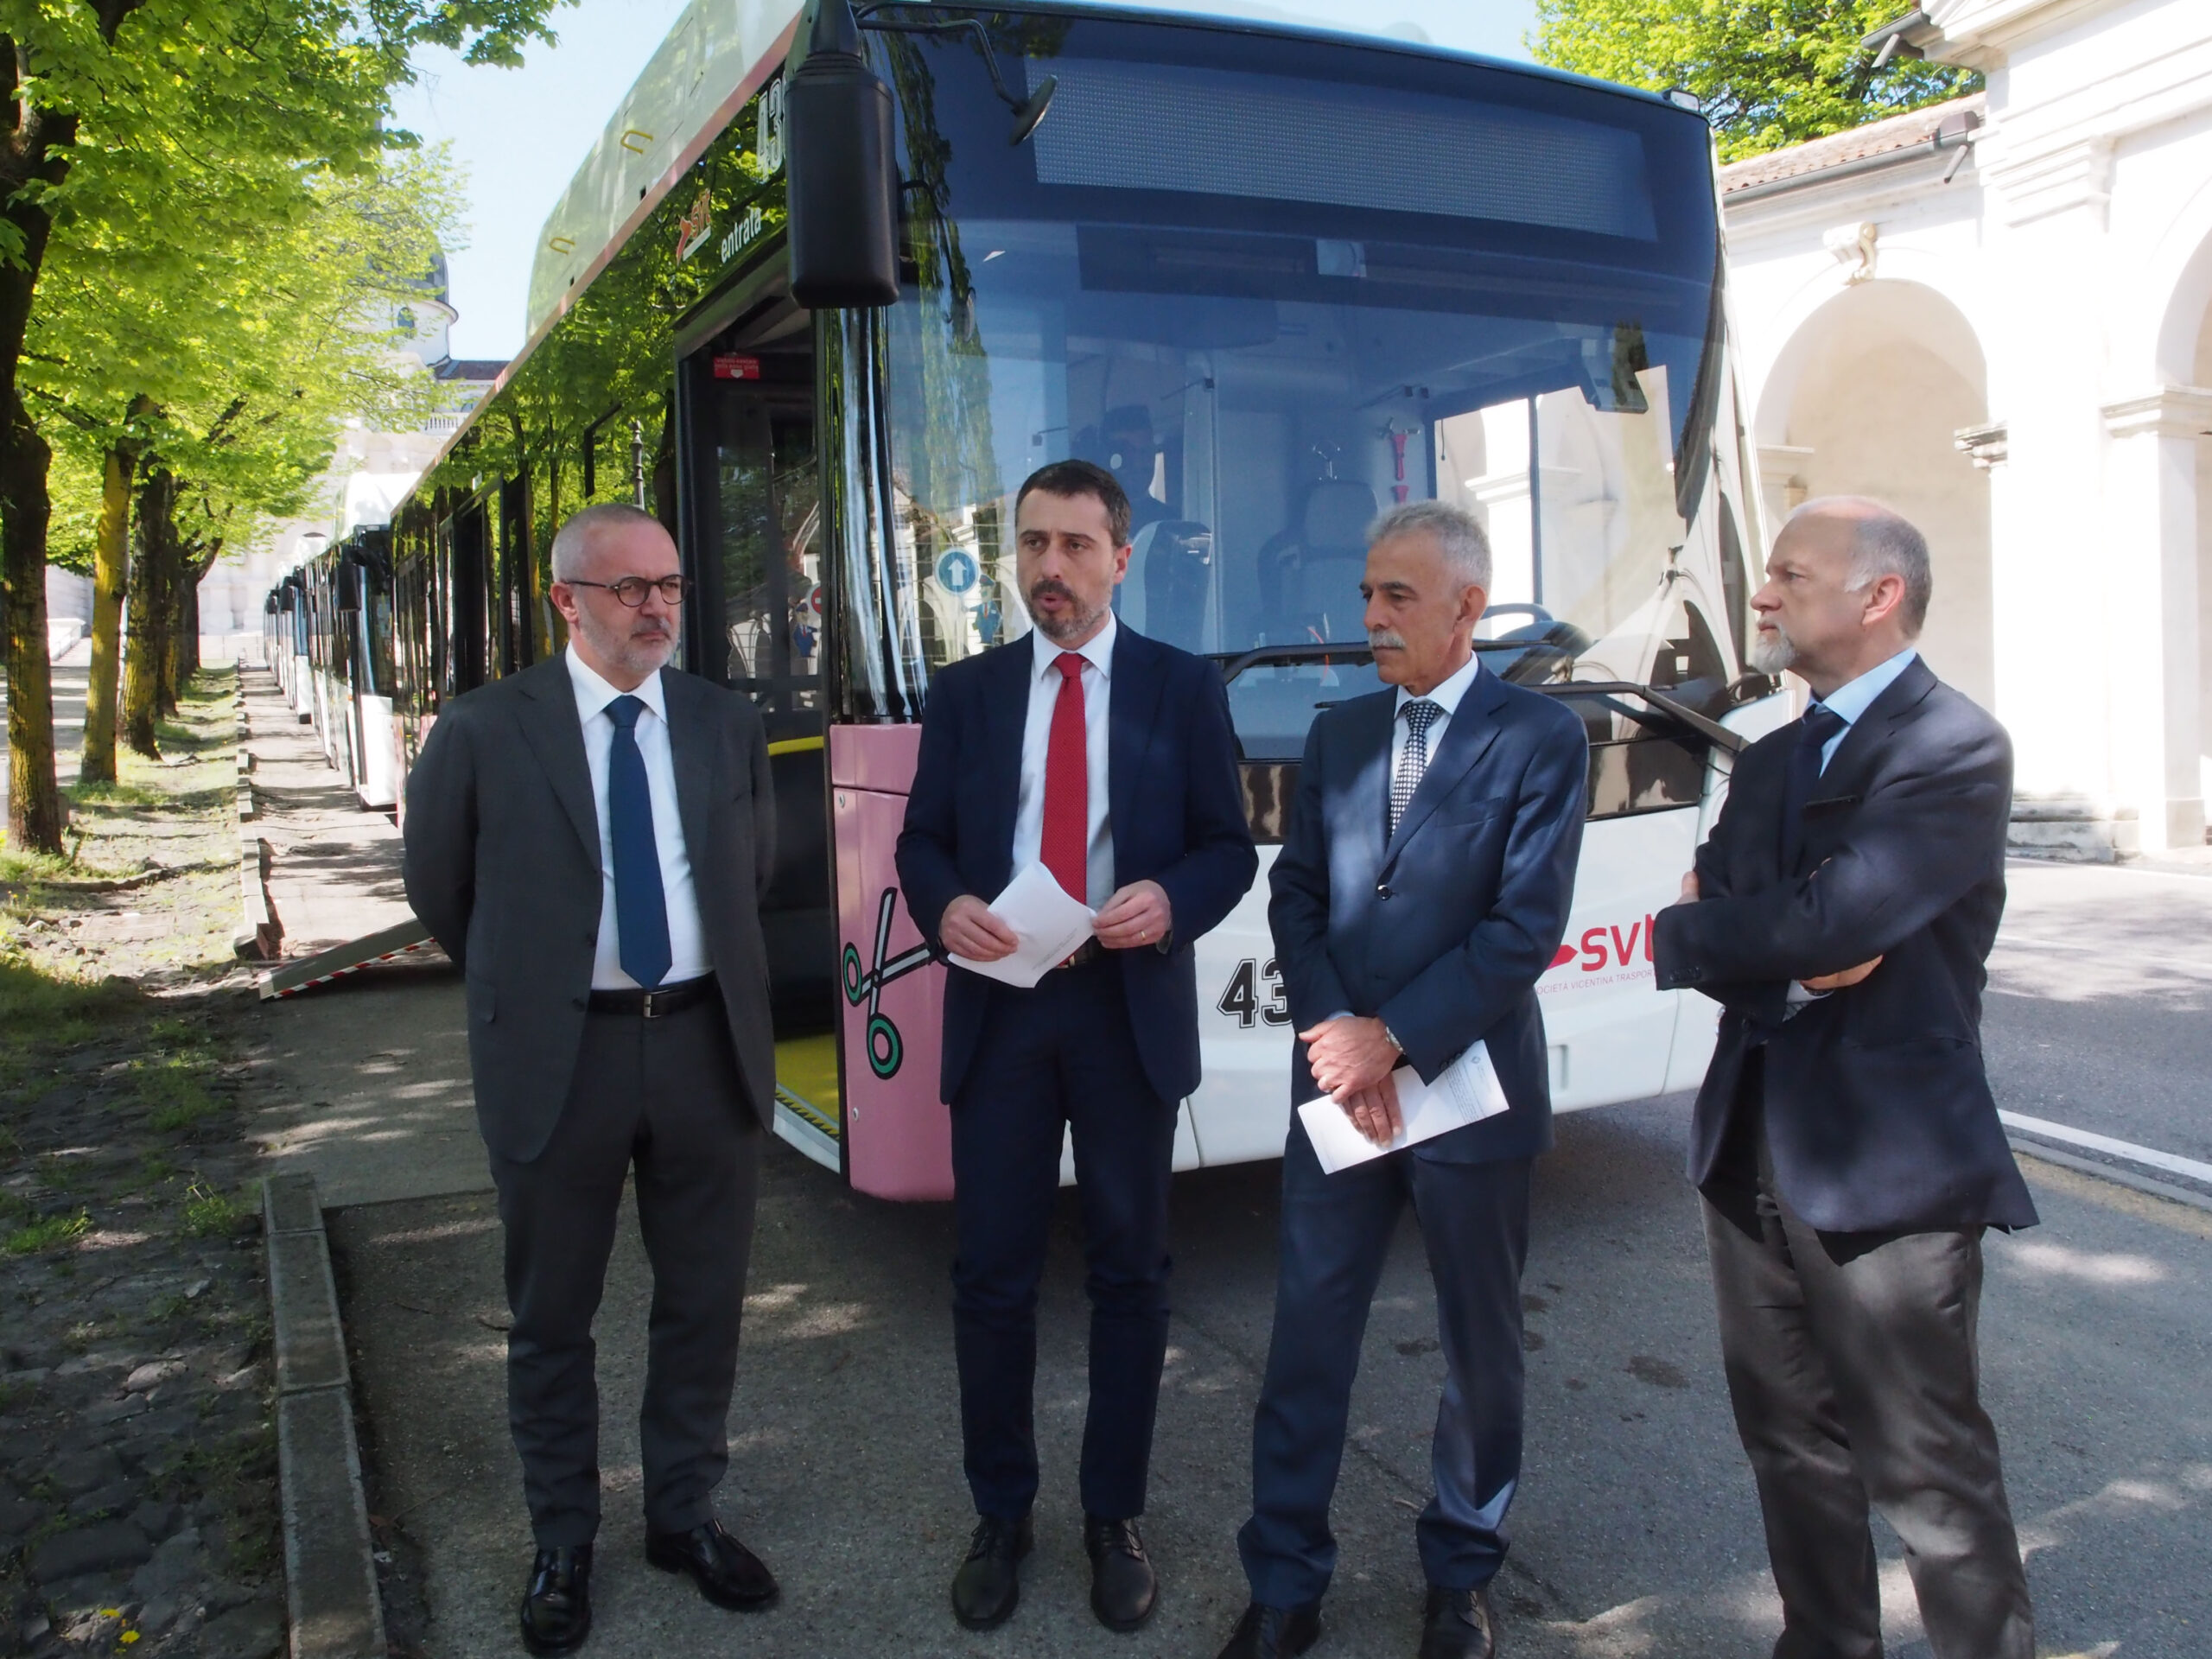 Vicenza: cinque nuovi autobus urbani per trasportare fino a 102 passeggeri